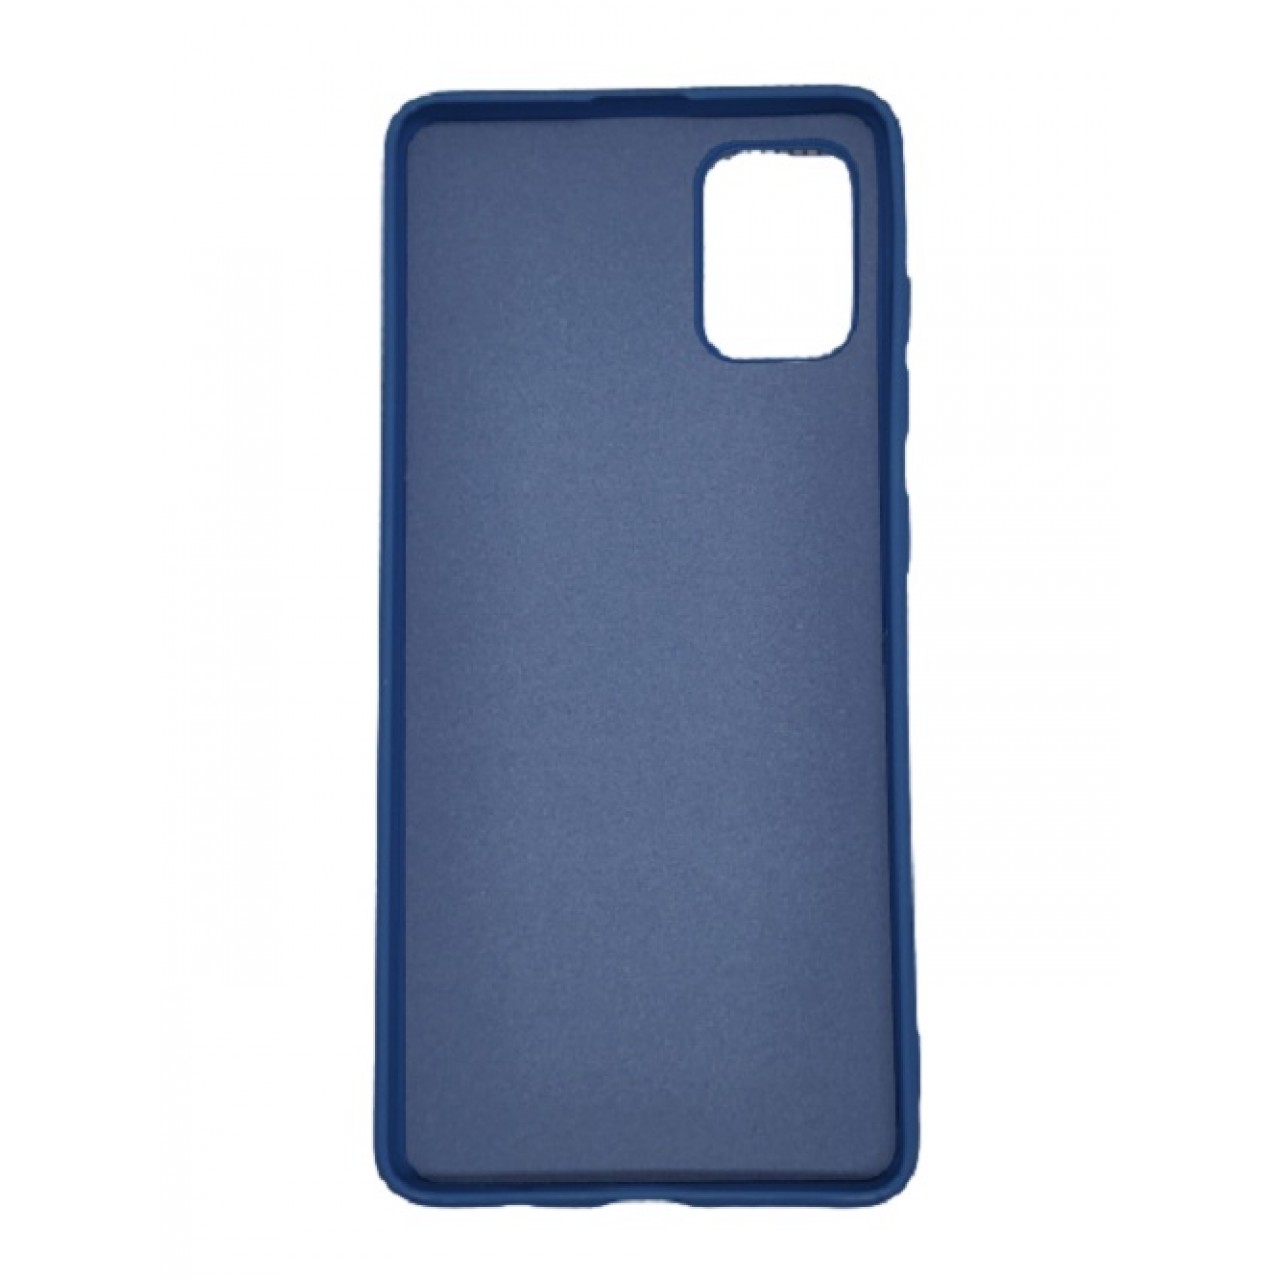 Θήκη Προστασίας Σιλικόνης Samsung Galaxy S10 Lite - Back Cover Silicone Case Oem - Navy Blue